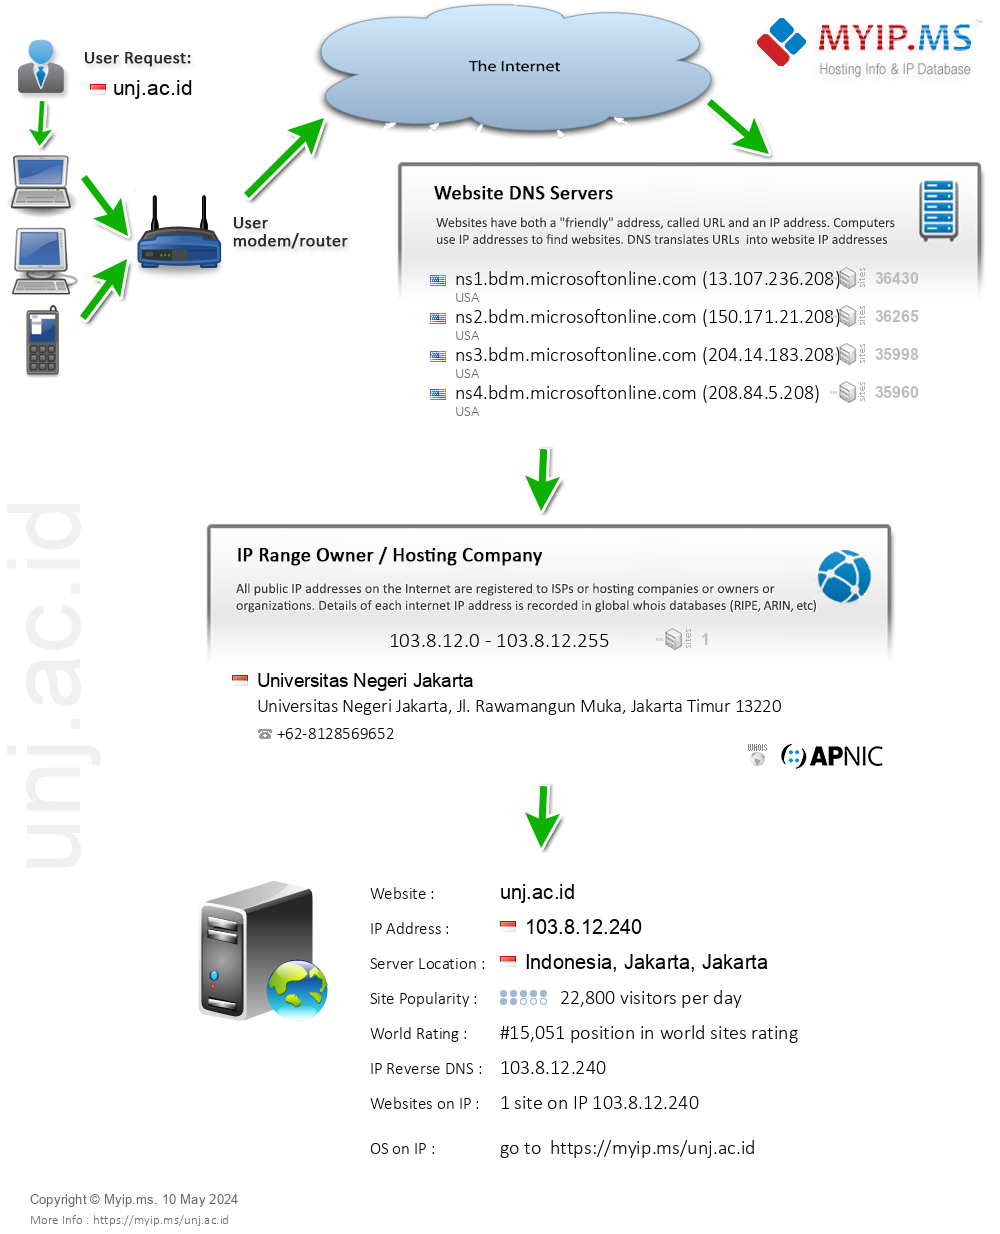 Unj.ac.id - Website Hosting Visual IP Diagram